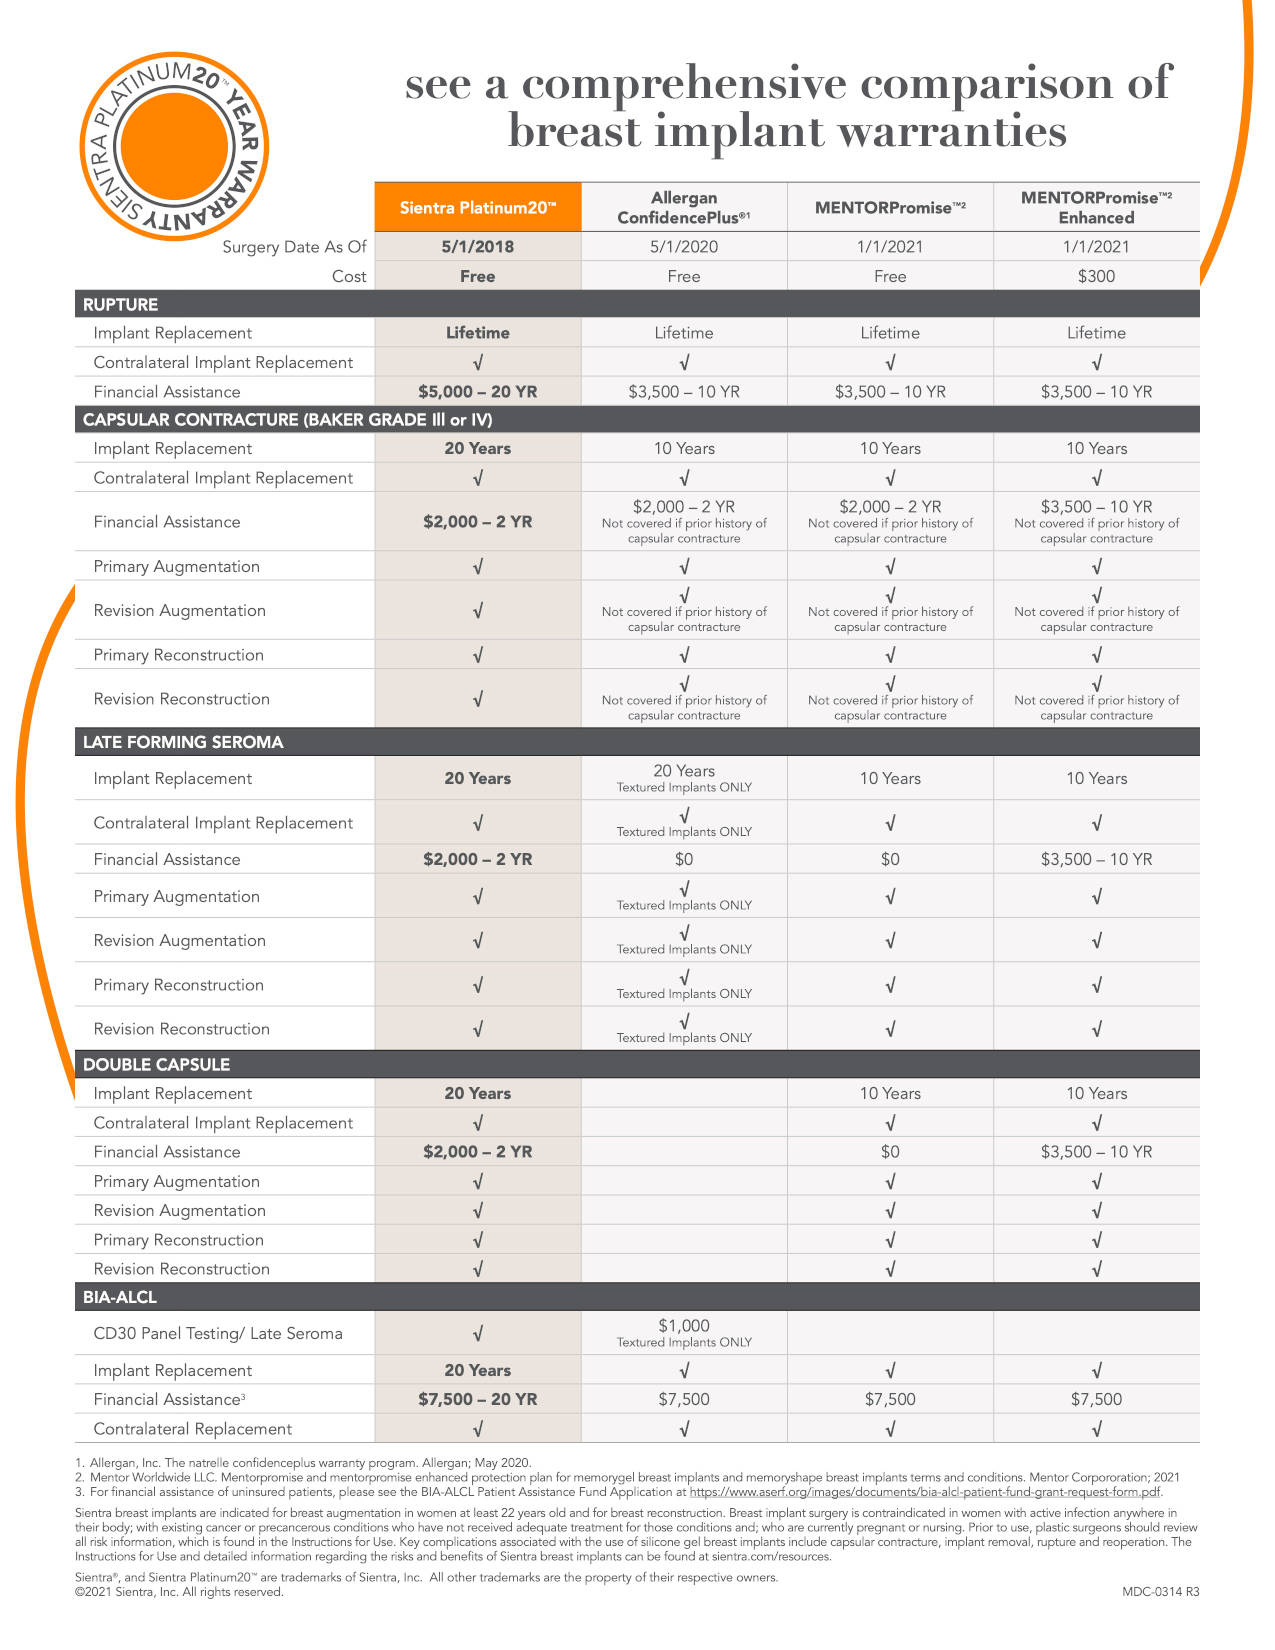 Sientra Platinum20 Warranty Comparison Chart